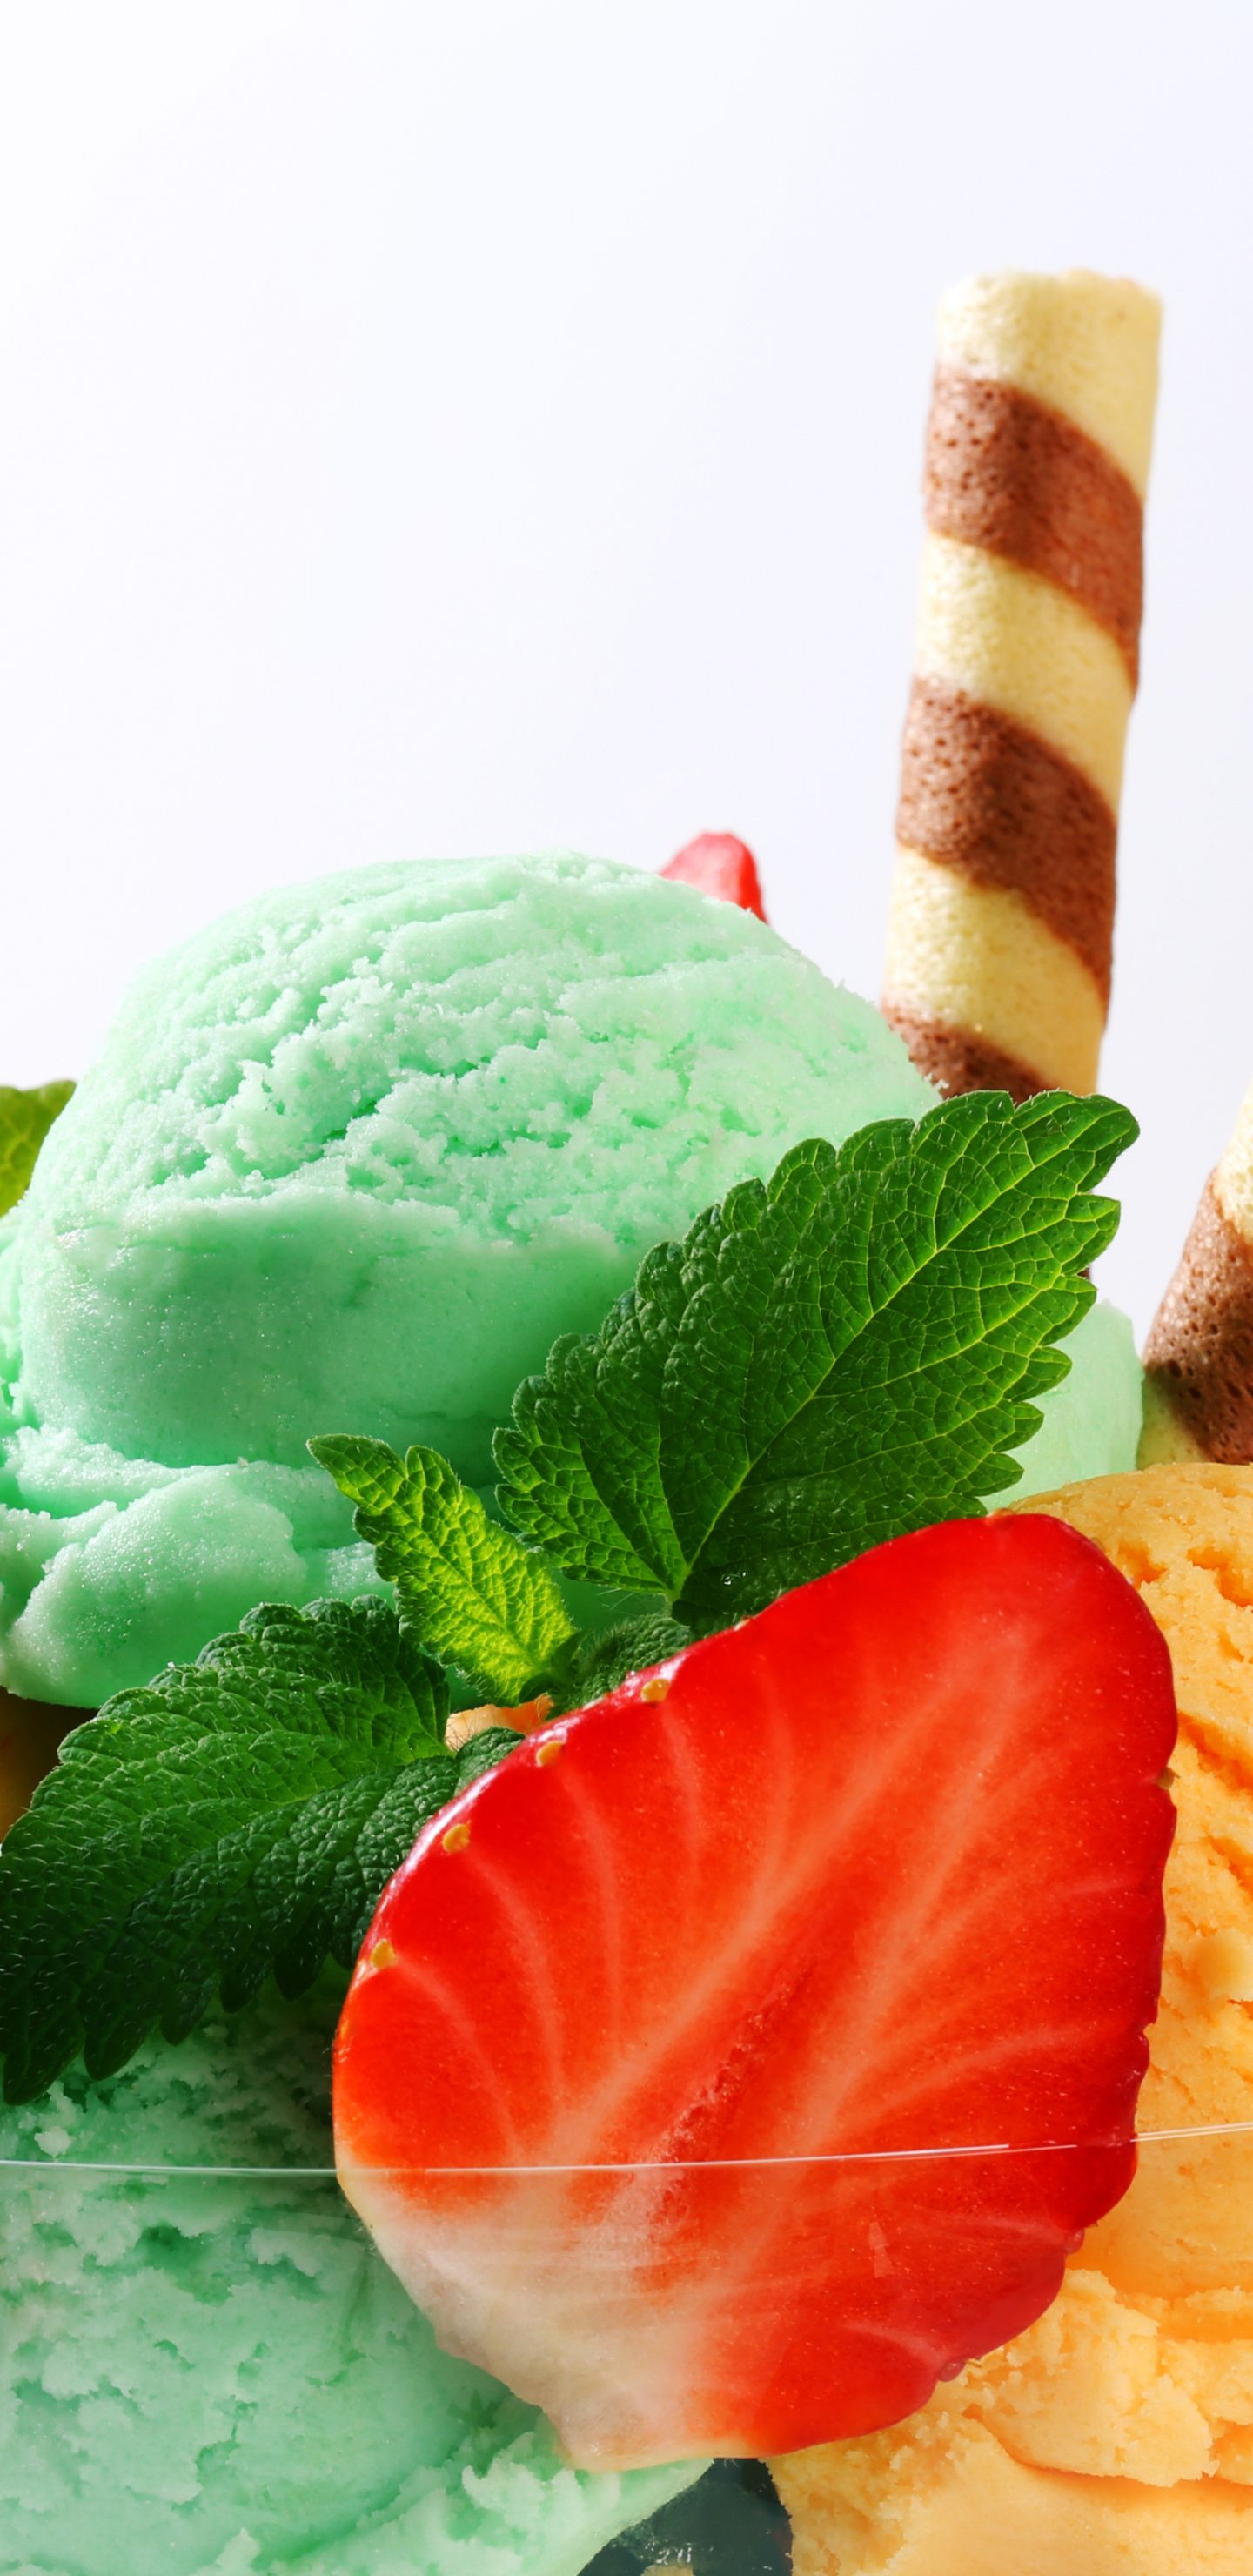 Download Summer, dessert, fruits, ice cream wallpaper, 1440x Samsung Galaxy S Samsung Galaxy S8 Plus